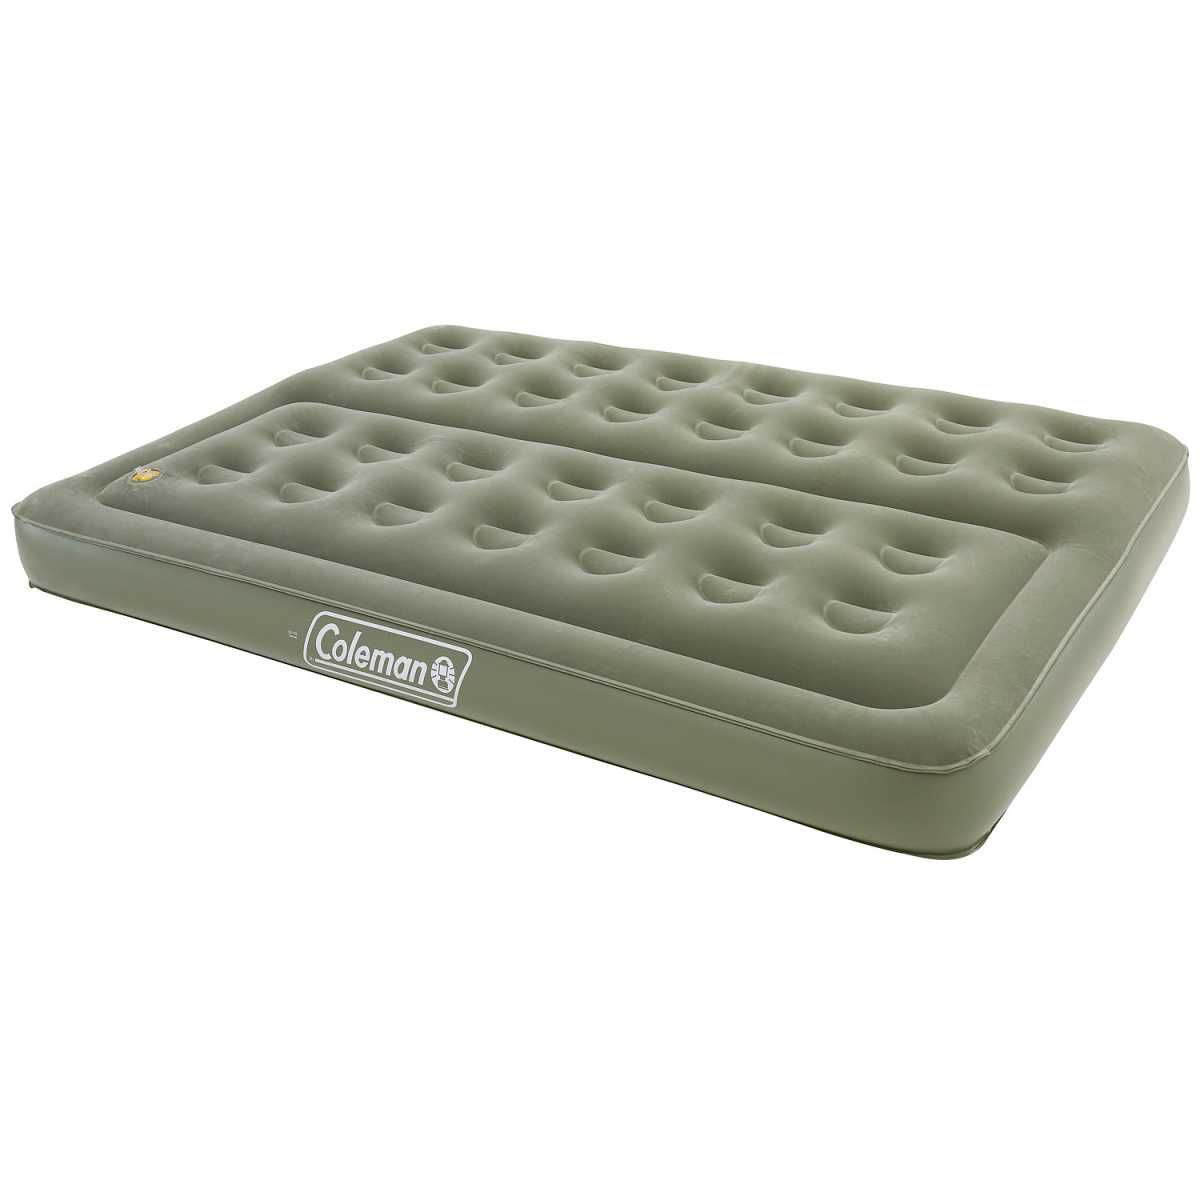 COLEMAN Luftbett Maxi Comfort Bed Double  - 2000039169